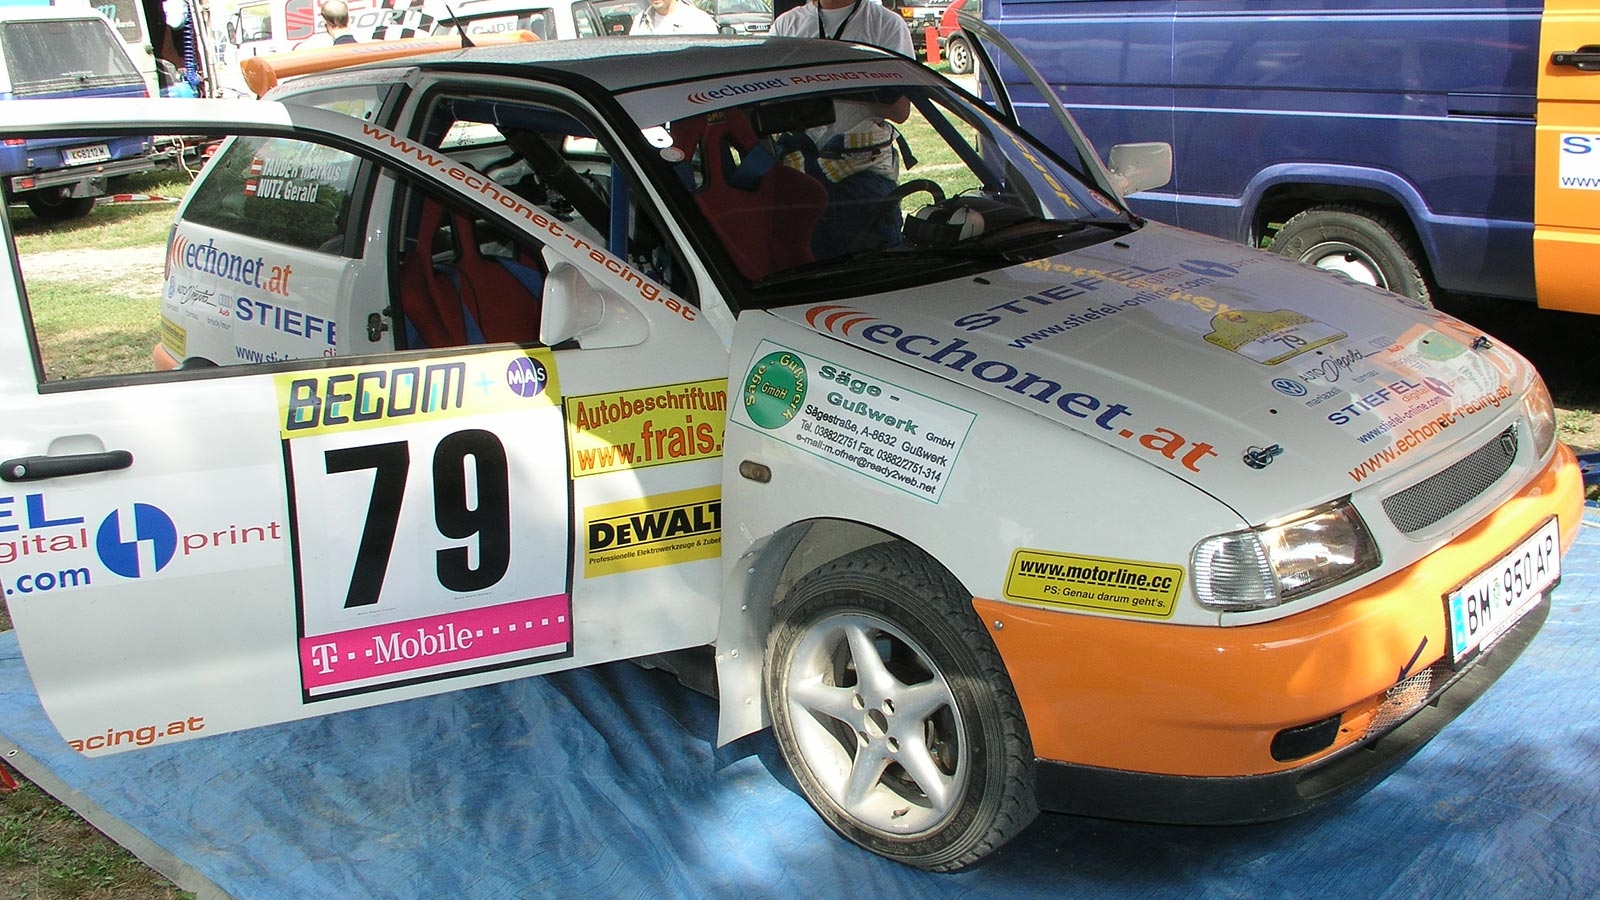 echonet Racing Team: Das Auto des Ralley-Teams Gery Nutz & Max Tauder © echonet / rv